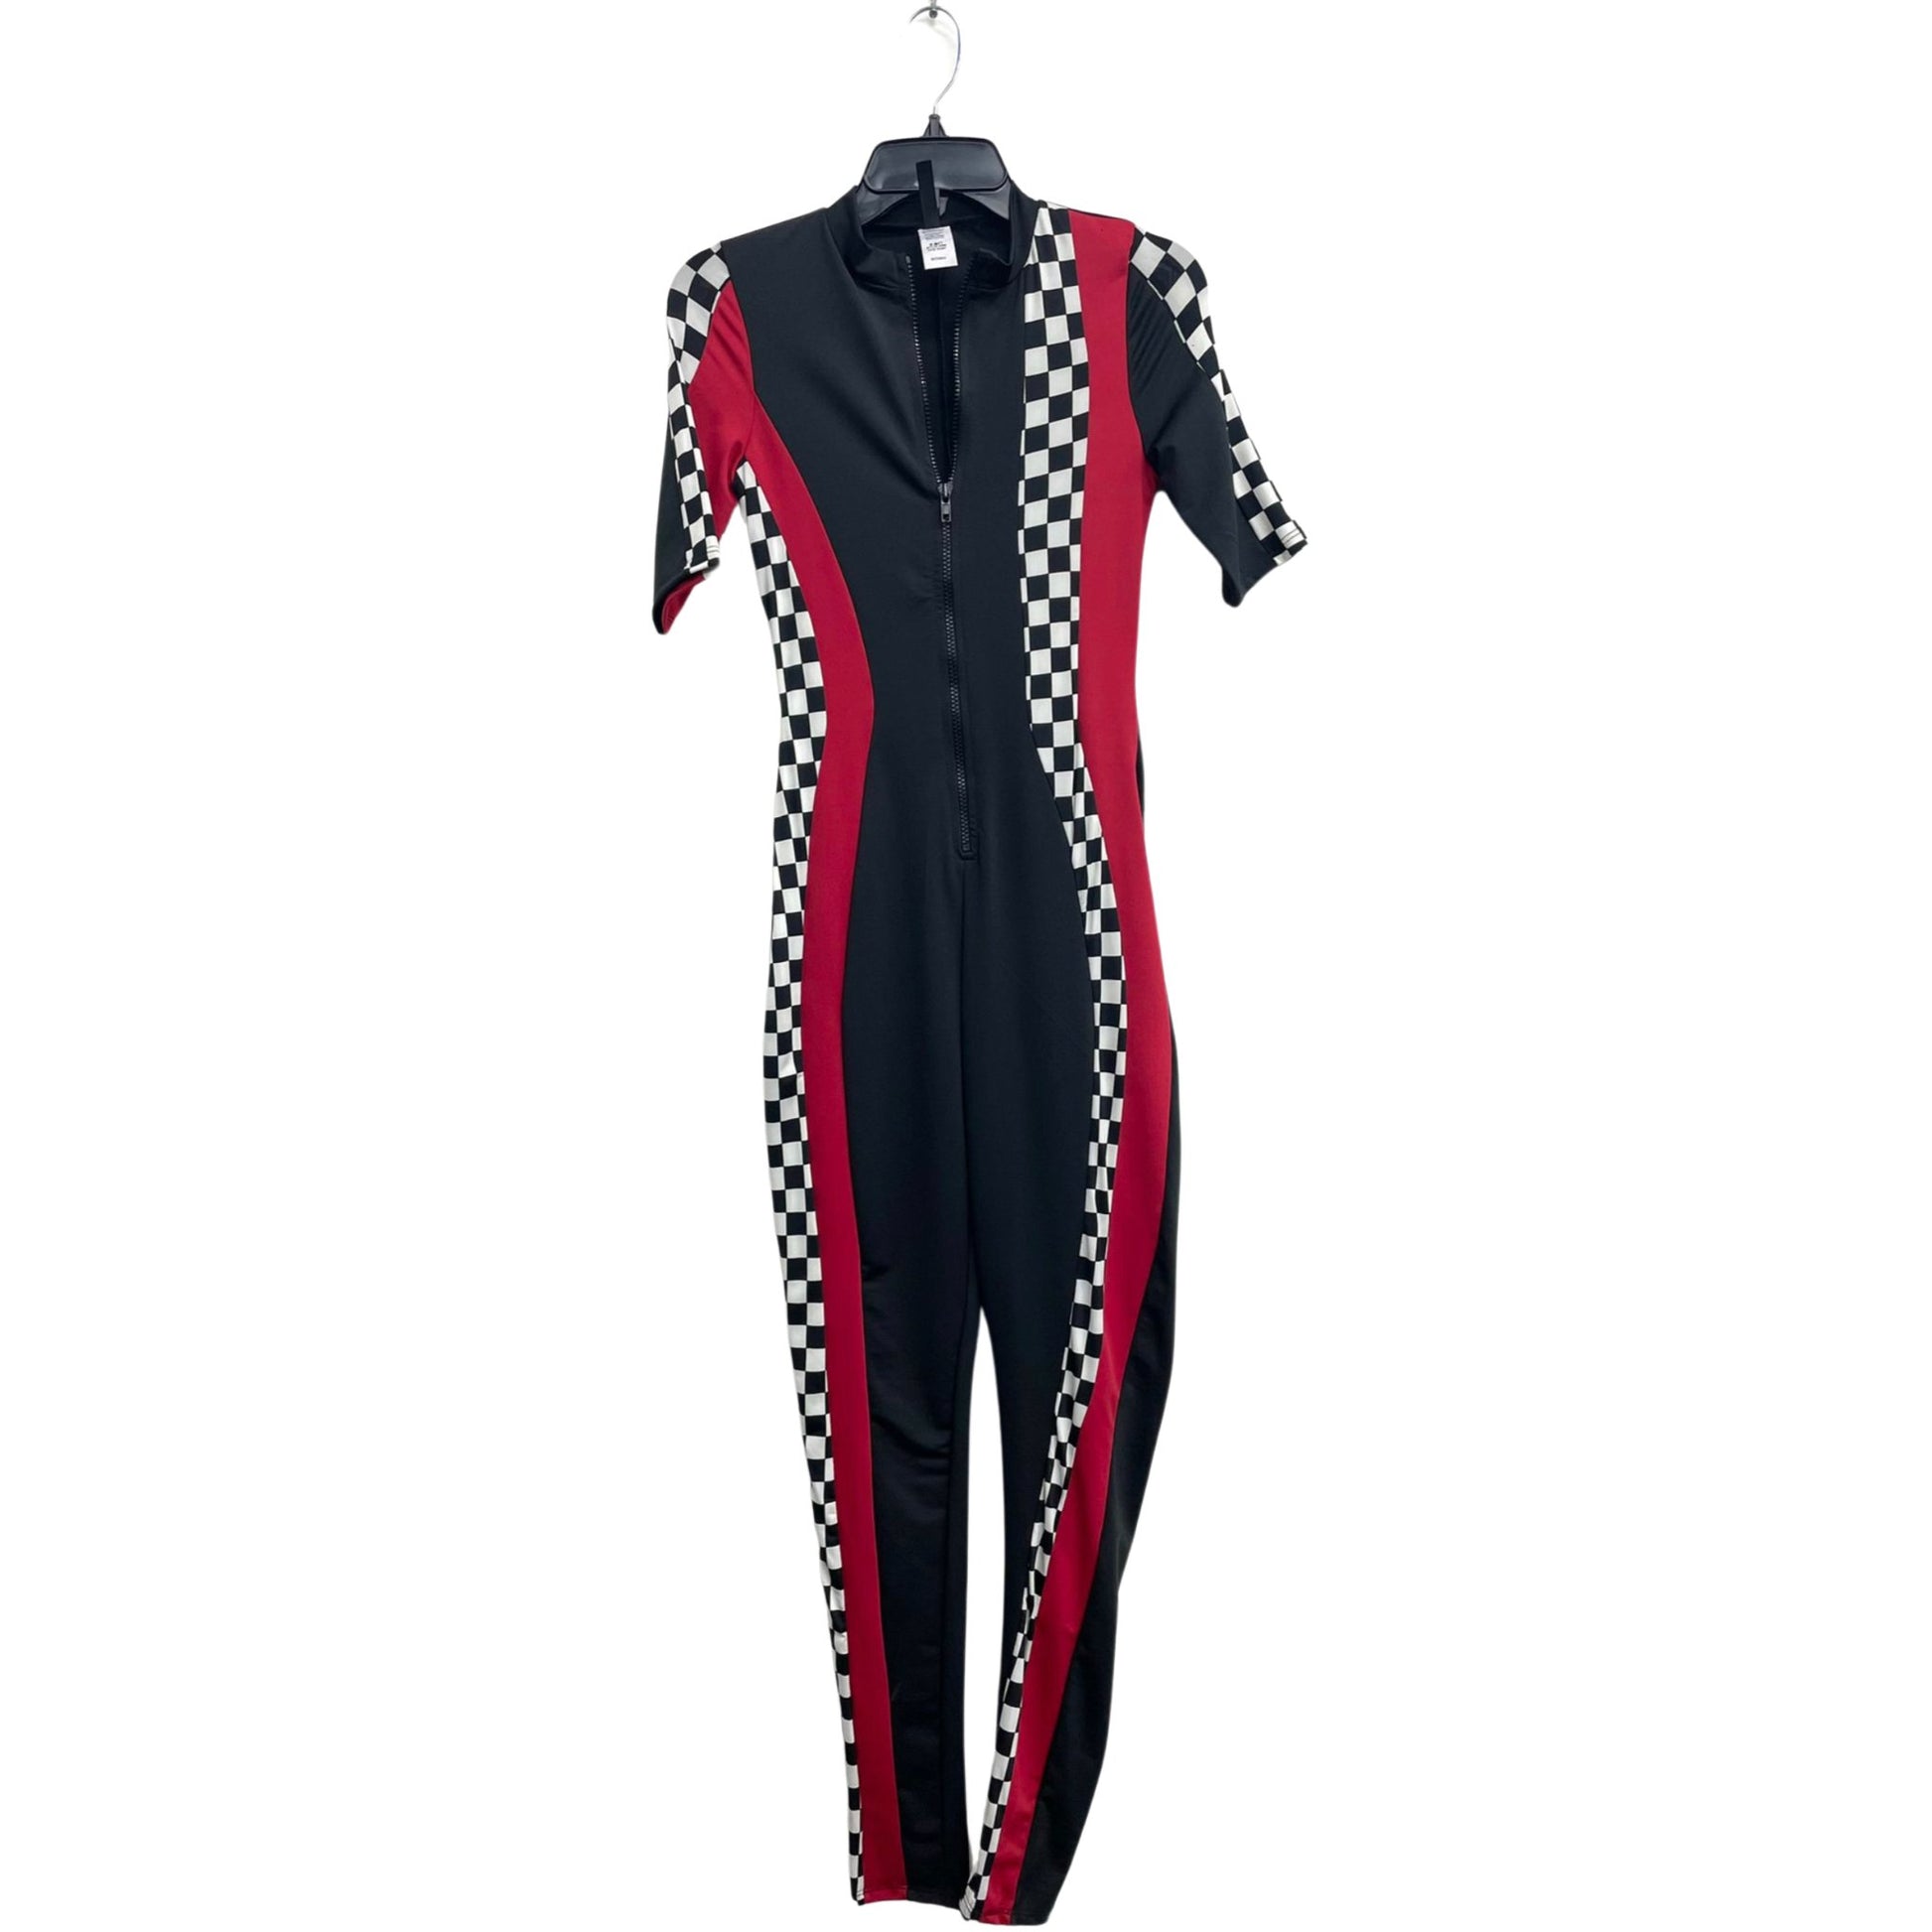 Racing zipper jumpsuit - Lavish life LLC 